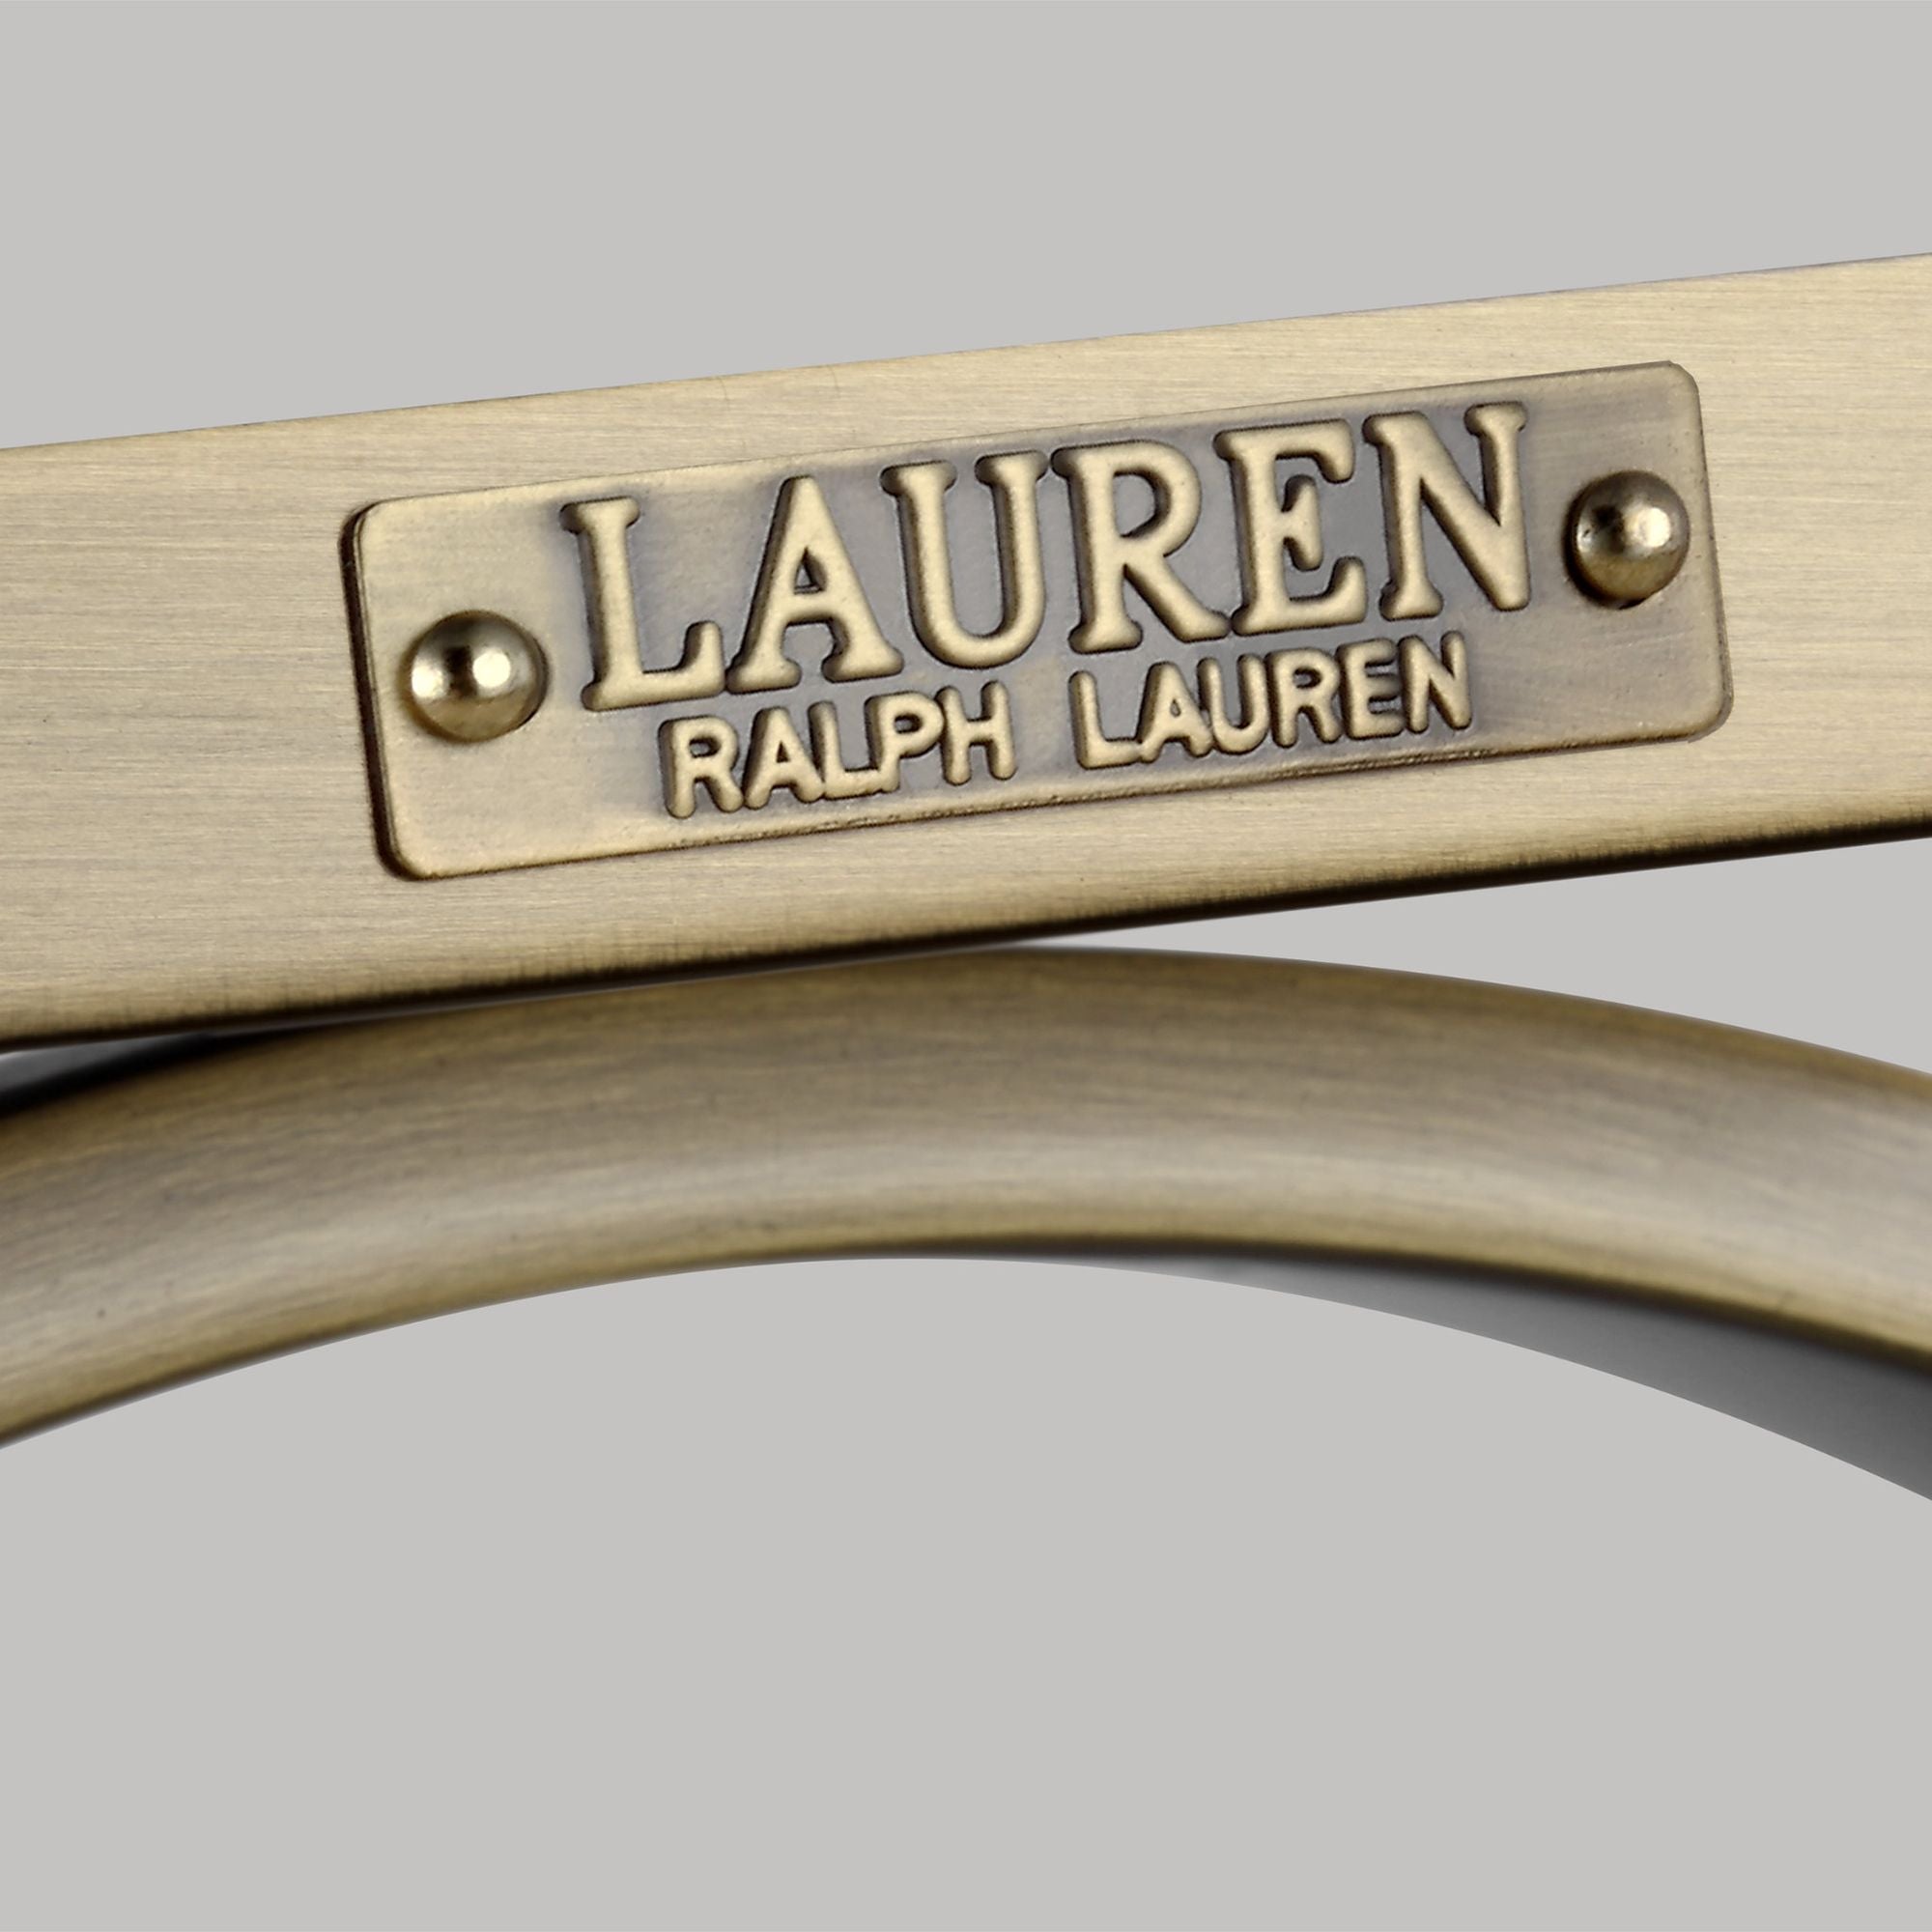 Lauren Ralph Lauren Katie Double Sconce in Time Worn Brass